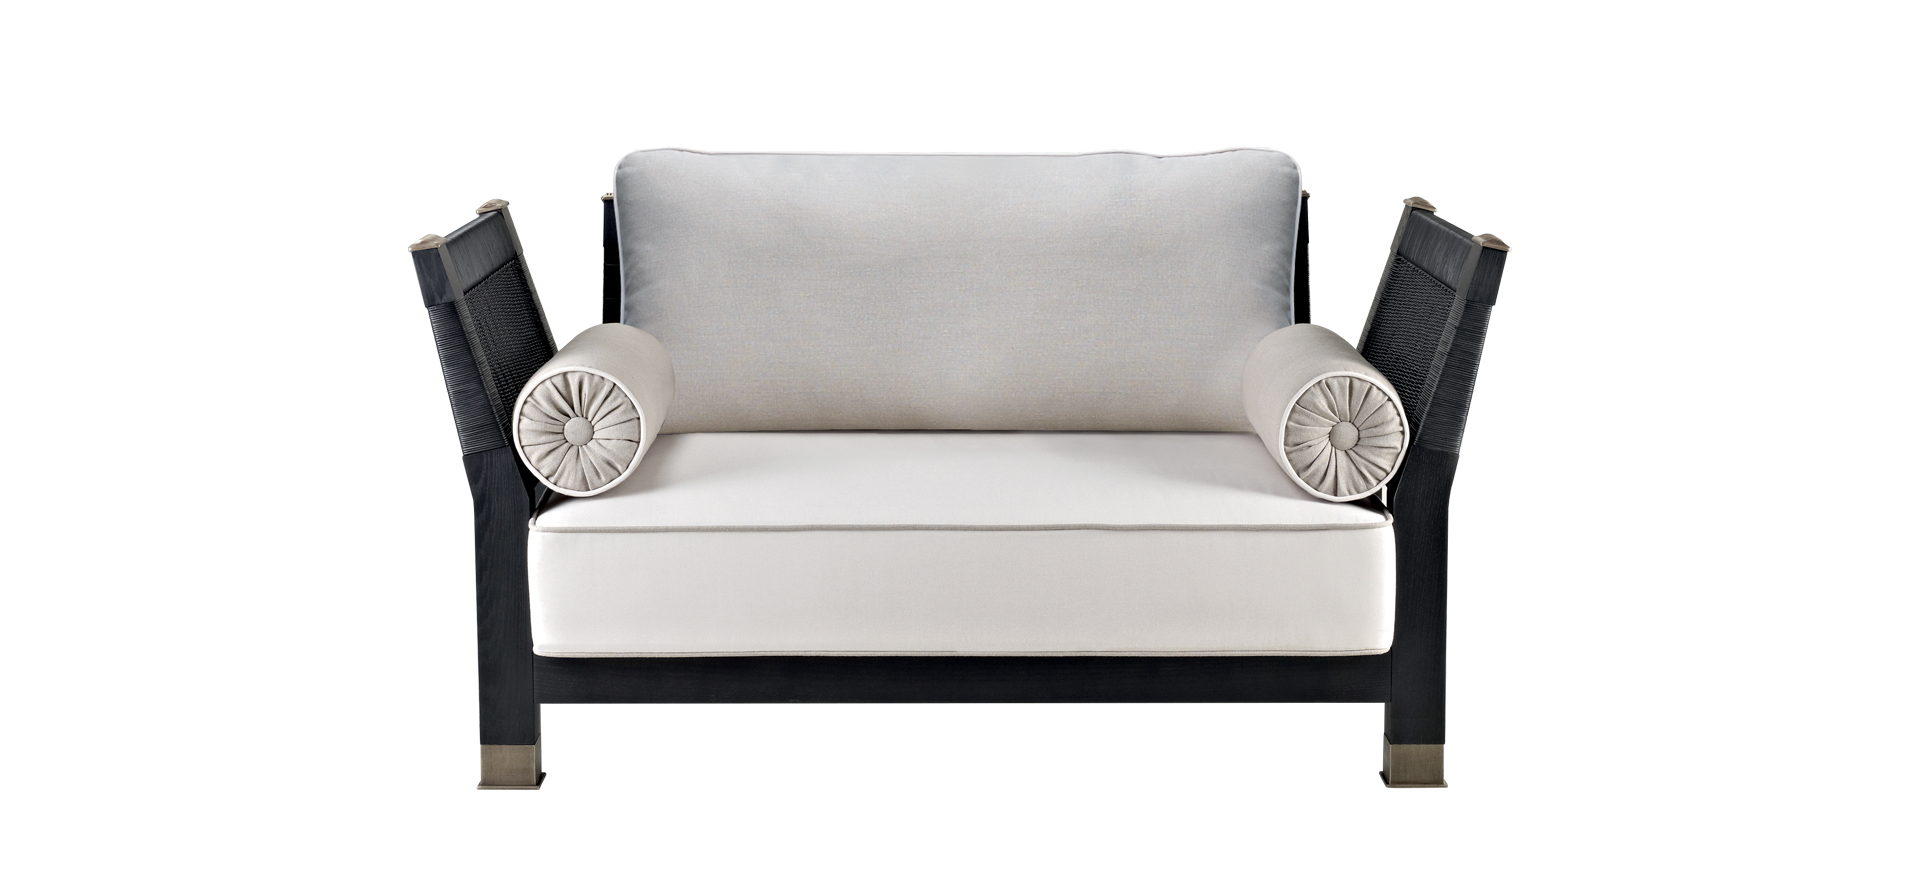 „Moltrasio“ ist ein hölzernes Sofa für den Außenbereich mit Füßen und Details aus Bronze, aus dem Outdoor-Katalog von Promemoria | Promemoria